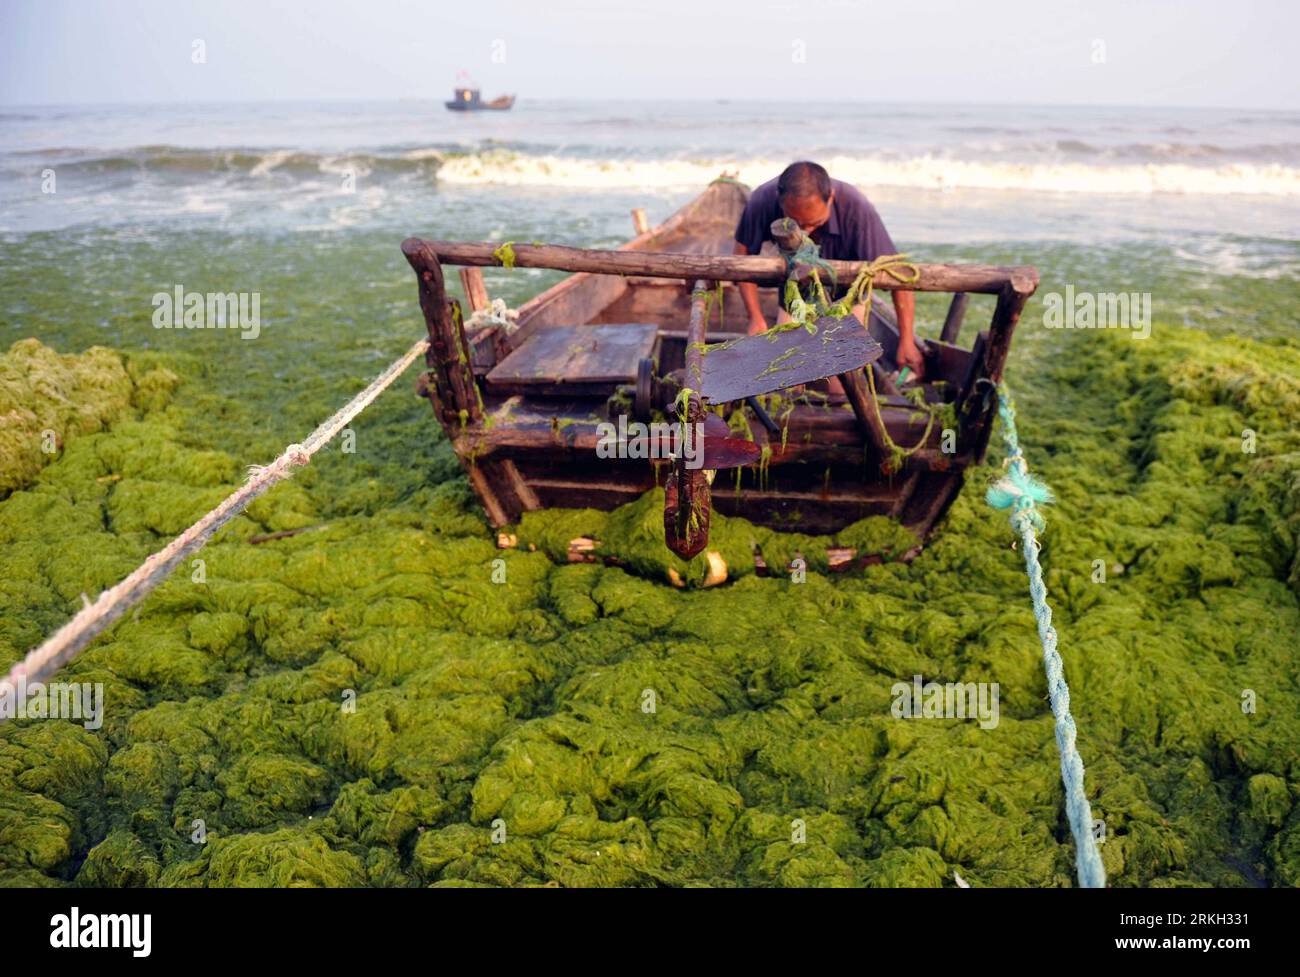 Bildnummer: 55679984 Datum: 05.08.2011 Copyright: imago/Xinhua (110805) - JINAN, 5 agosto 2011 (Xinhua) - Un uomo rimuove alghe verdi dalla sua barca sulla riva del mare nella città di Haiyang, nella provincia dello Shandong della Cina orientale, 5 agosto 2011. Negli ultimi giorni le alghe verdi hanno continuato a diffondersi verso nord sulla costa orientale della Cina. (Xinhua/Fang Yi) (ry) CHINA-SHANDONG-HAIYANG-GREEN ALGAE (CN) PUBLICATIONxNOTxINxCHN Gesellschaft Meer Küste Algen Grünalgen Algenplage Strand xbs x0x premiumd 2011 quer Bildnummer 55679984 Data 05 08 2011 Copyright Imago XINHUA Jinan Aug 5 2011 XINHUA a Man rimuove Green Alga Foto Stock